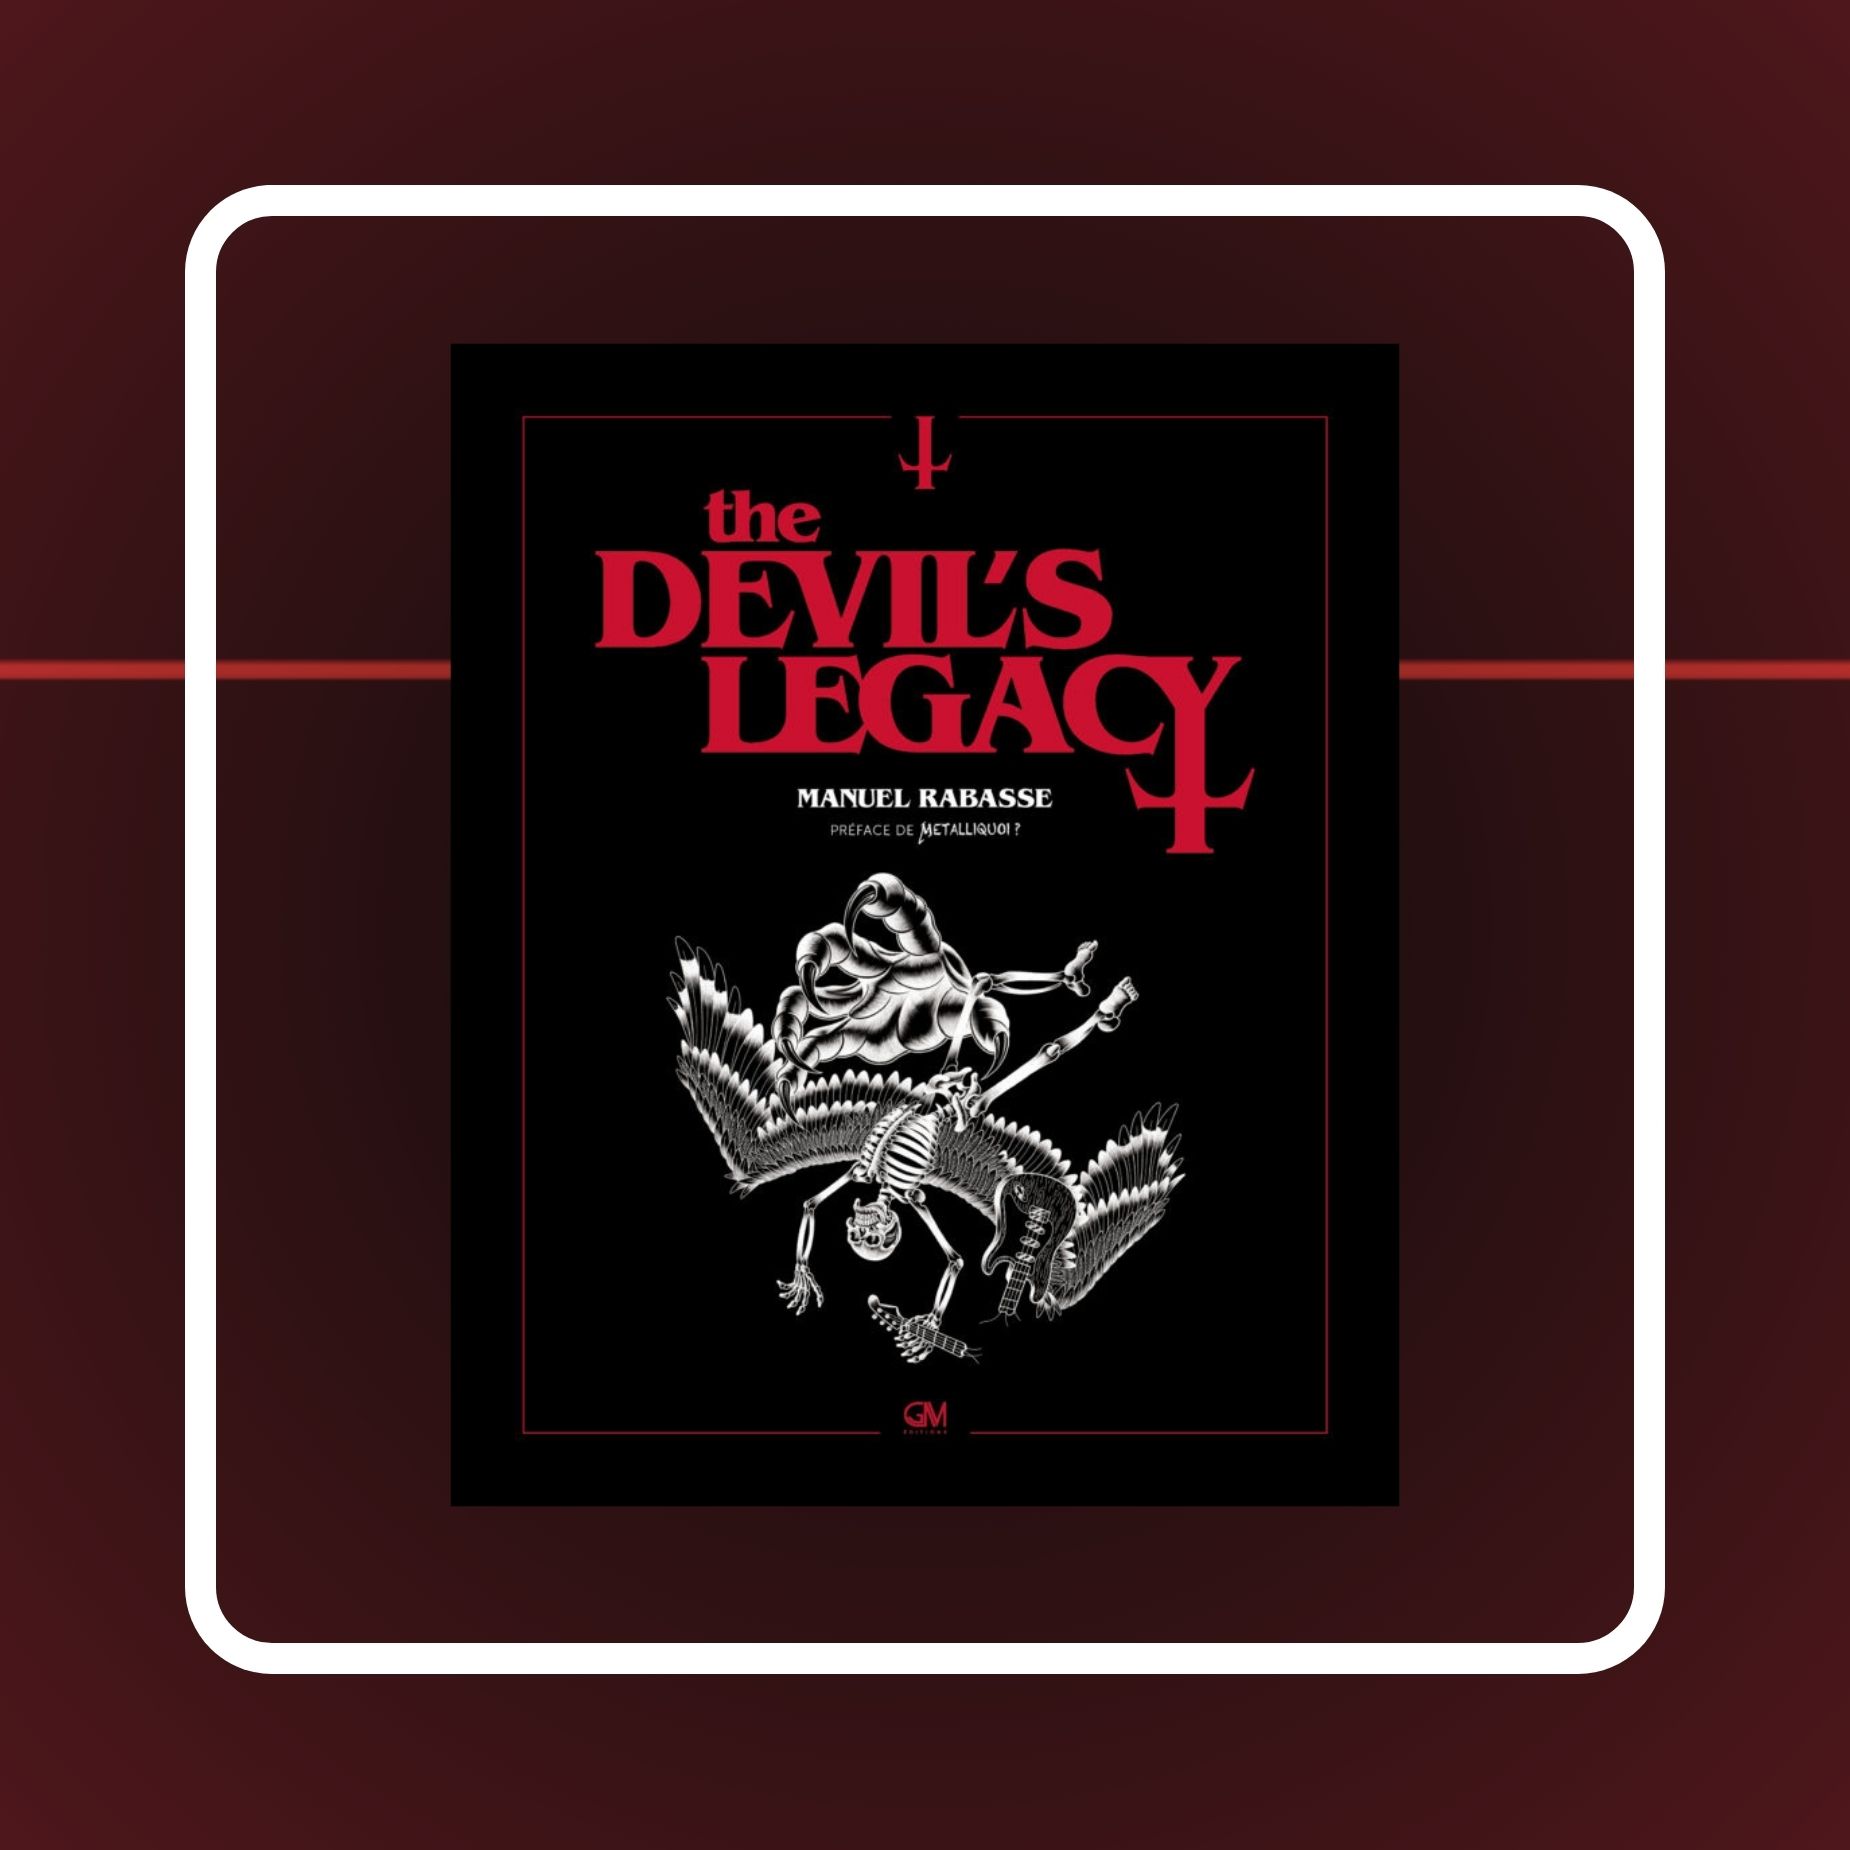 The Devil's Legacy